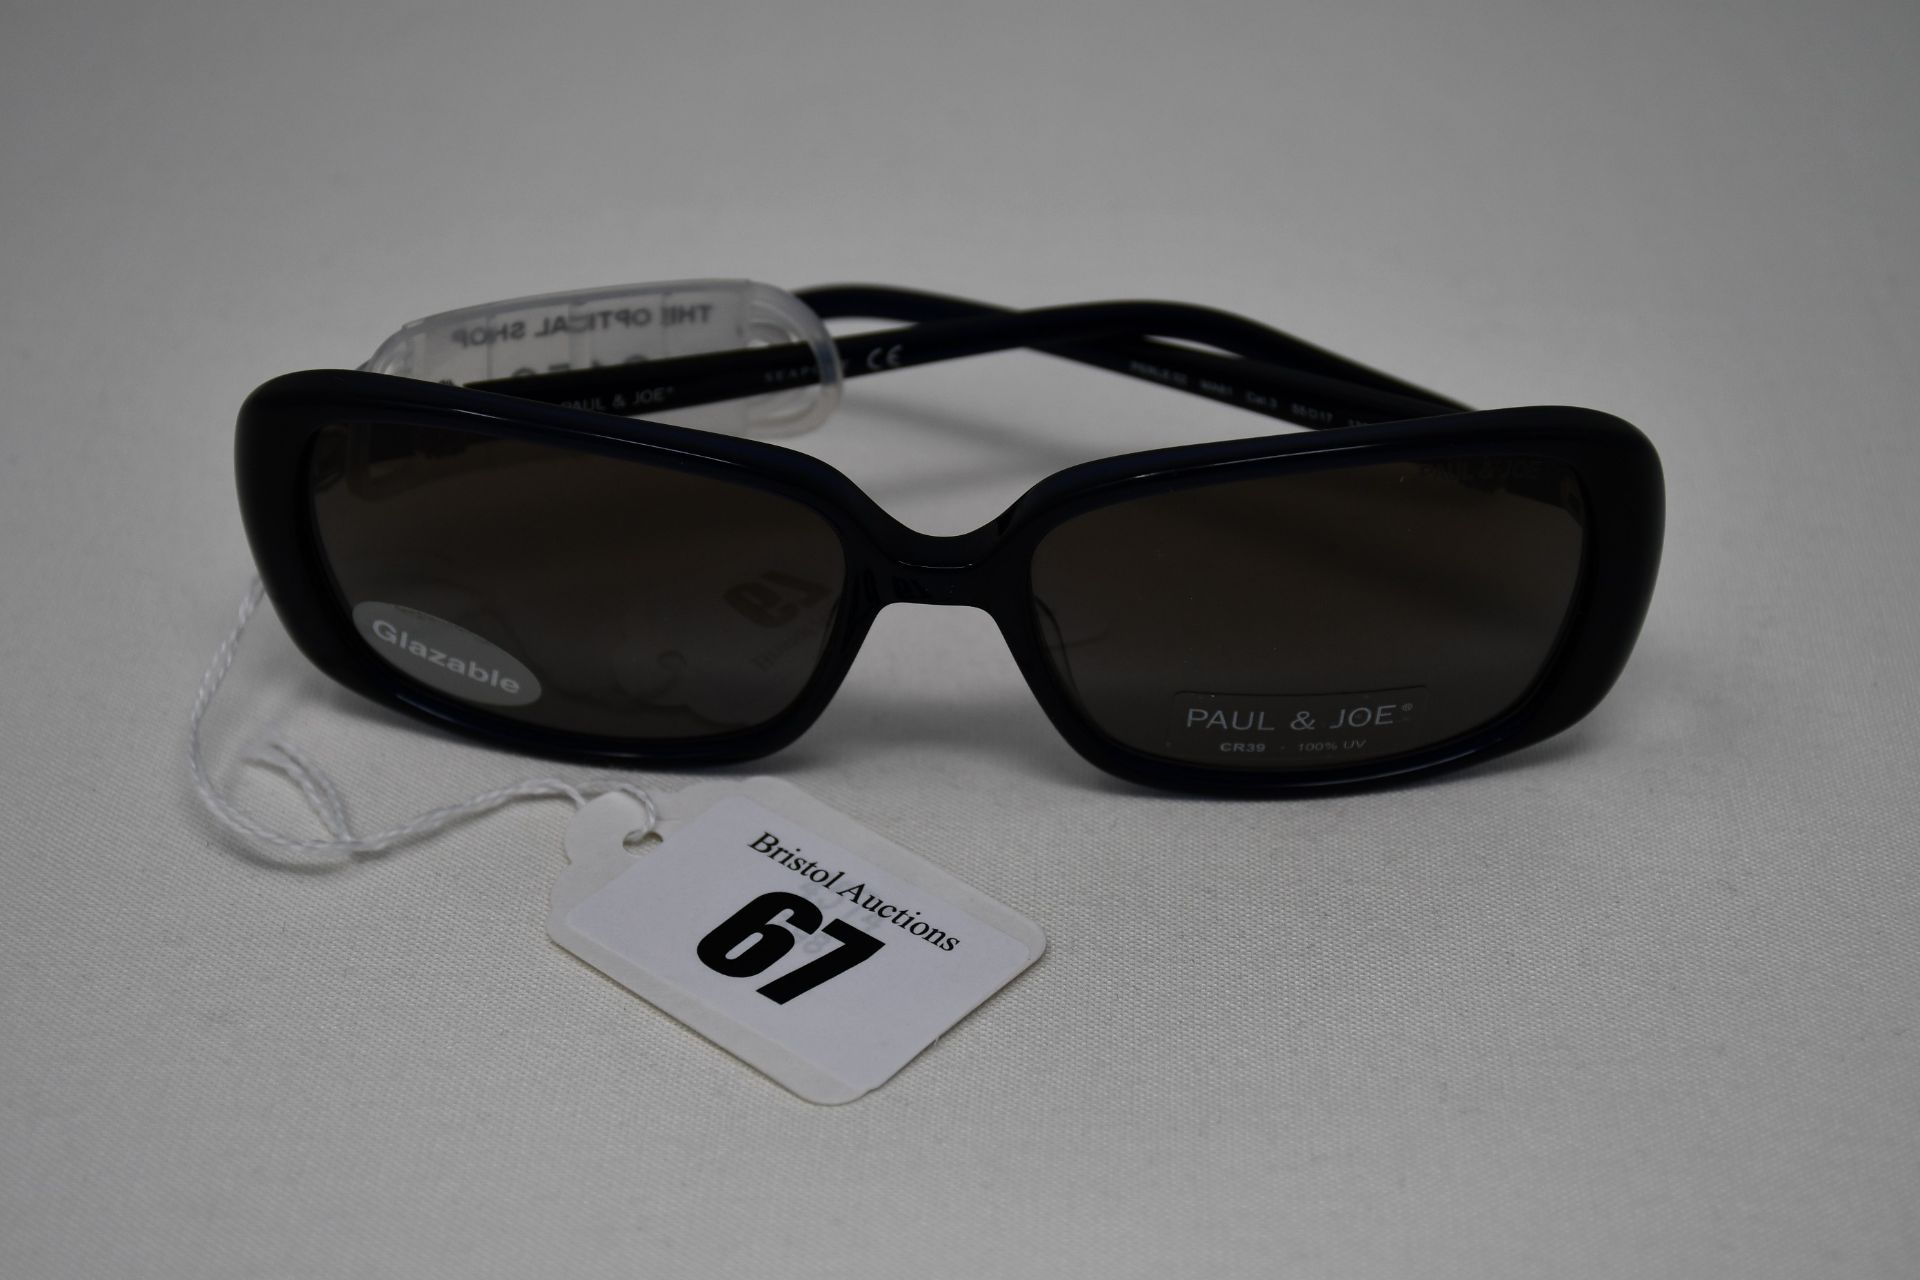 A pair of as new Paul & Joe sunglasses (RRP £150).